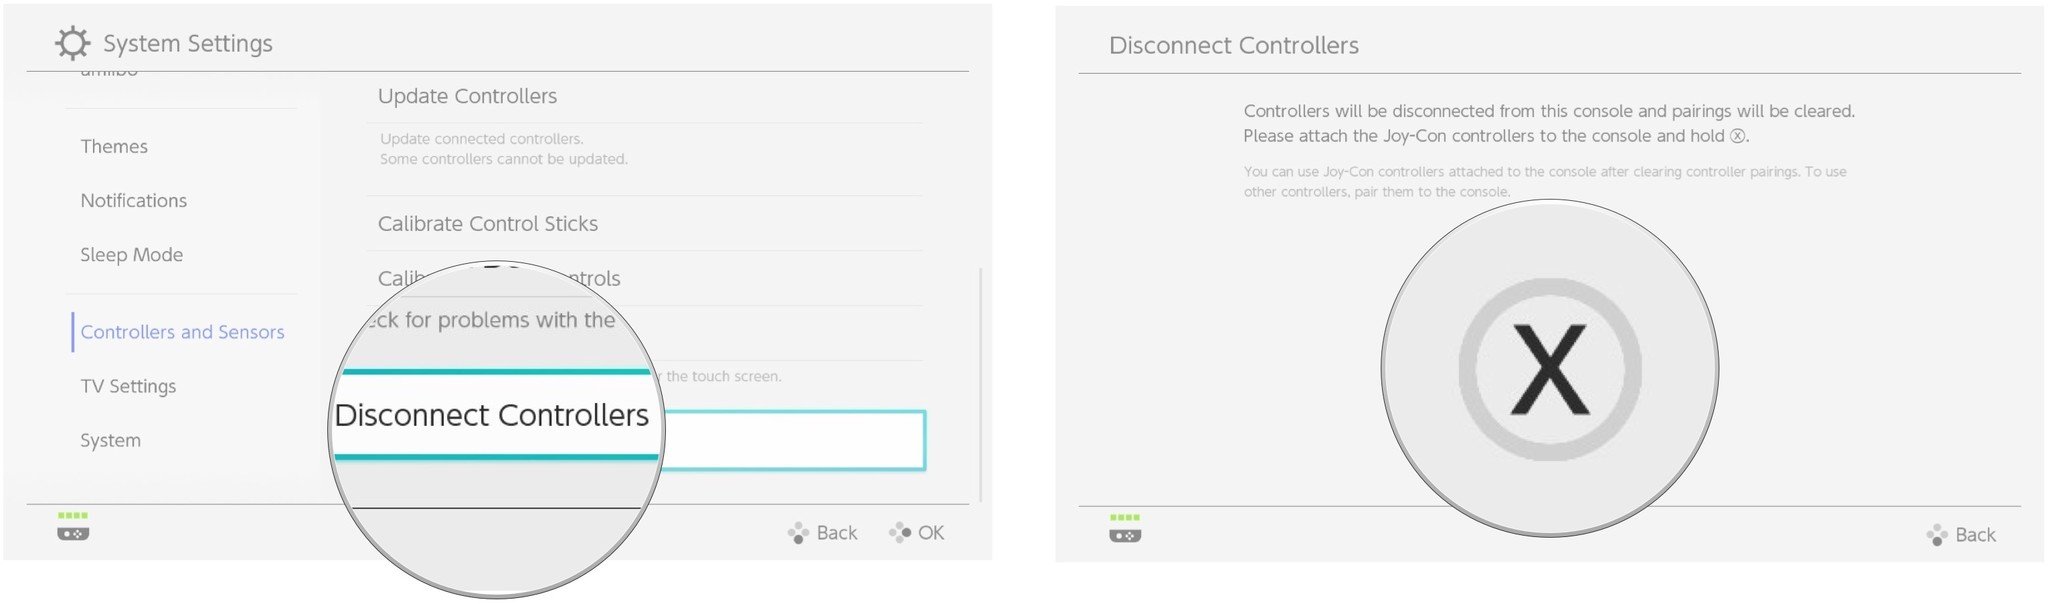 Выберите контроллеры отключения, затем нажмите кнопку X после подключения контроллеров к коммутатору.